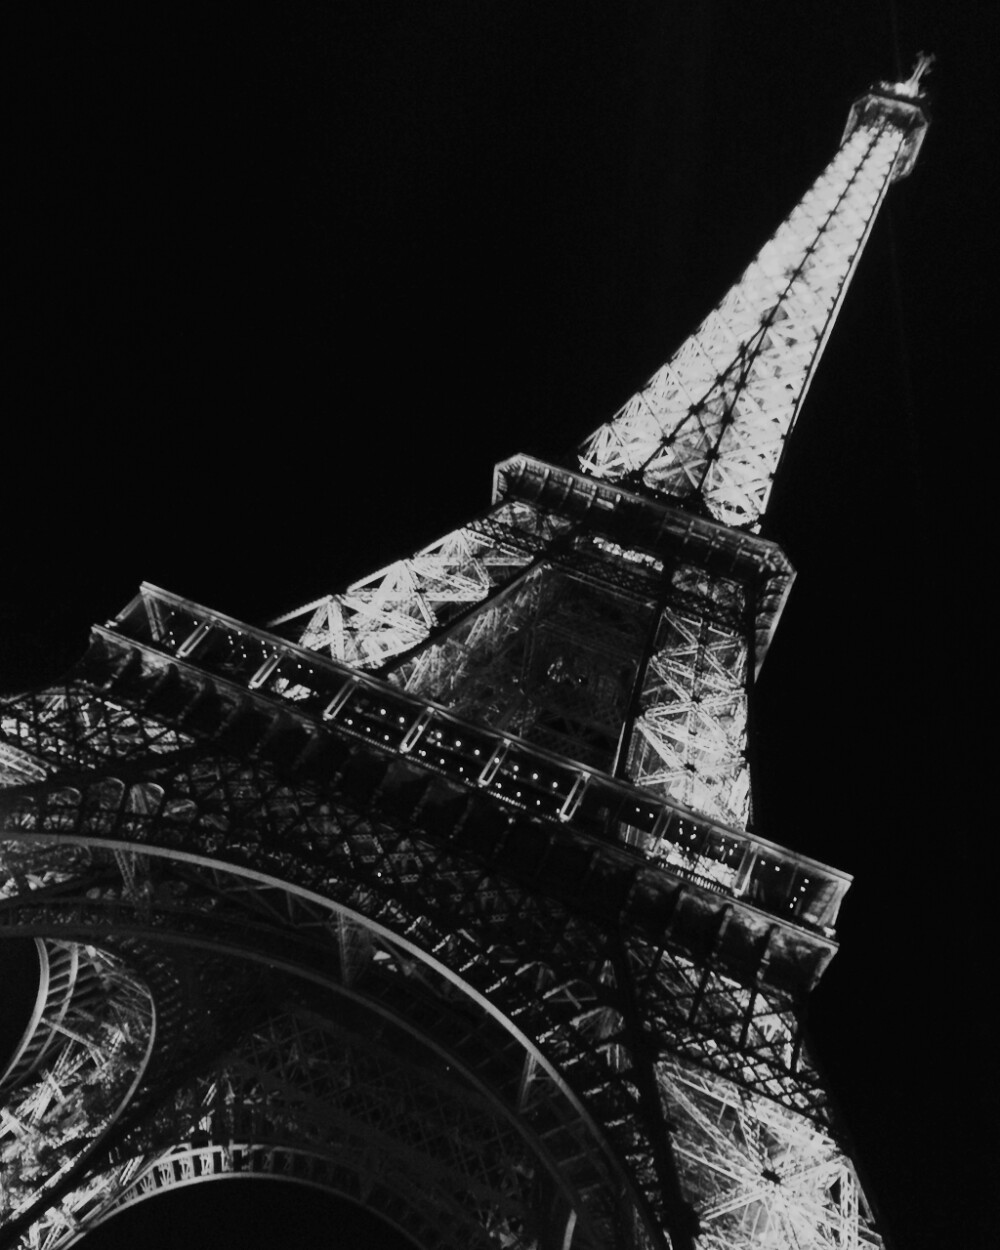 埃菲尔铁塔，我们都有一个巴黎梦，梦里的我们在铁塔下。还记得那个日日憧憬巴黎的自己，而今现在的自己日日见到她，也终于是梦想的实现。